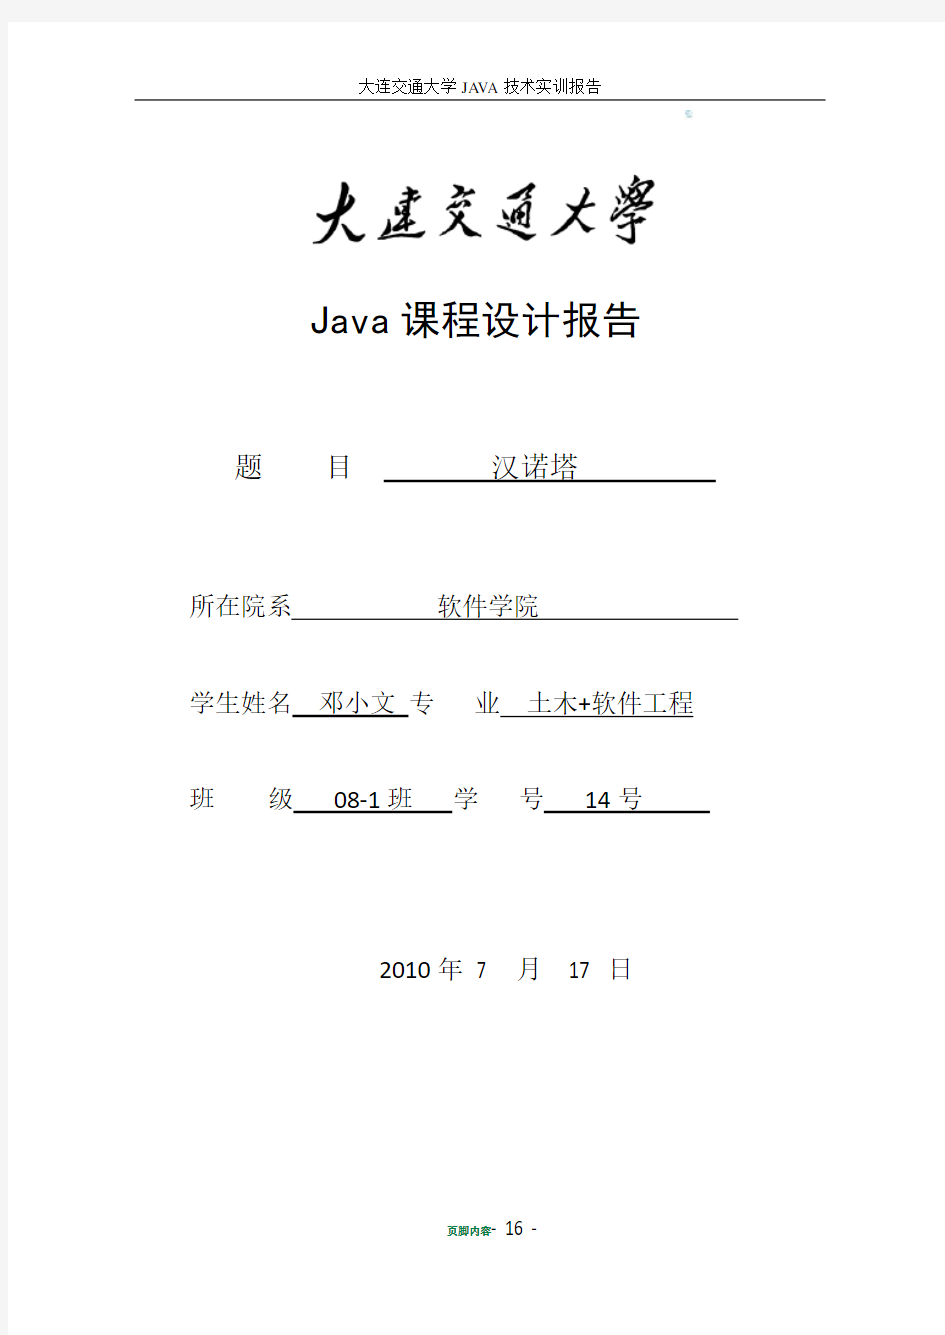 Hannoi塔(汉诺塔)--Java课程设计报告